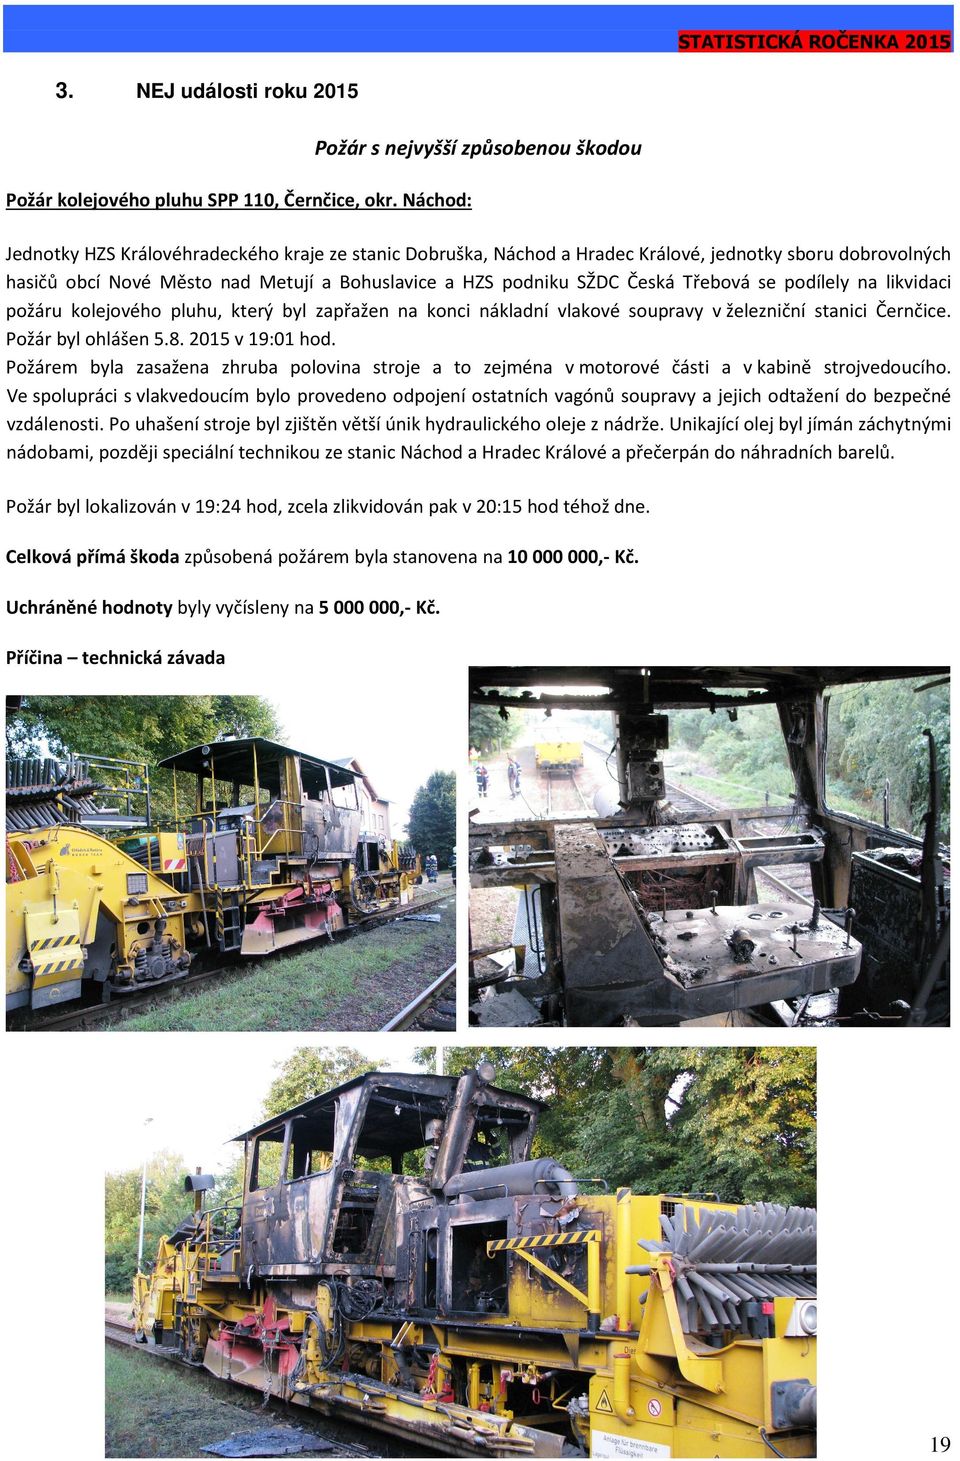 se podílely na likvidaci požáru kolejového pluhu, který byl zapřažen na konci nákladní vlakové soupravy v železniční stanici Černčice. Požár byl ohlášen 5.8. 2015 v 19:01 hod.